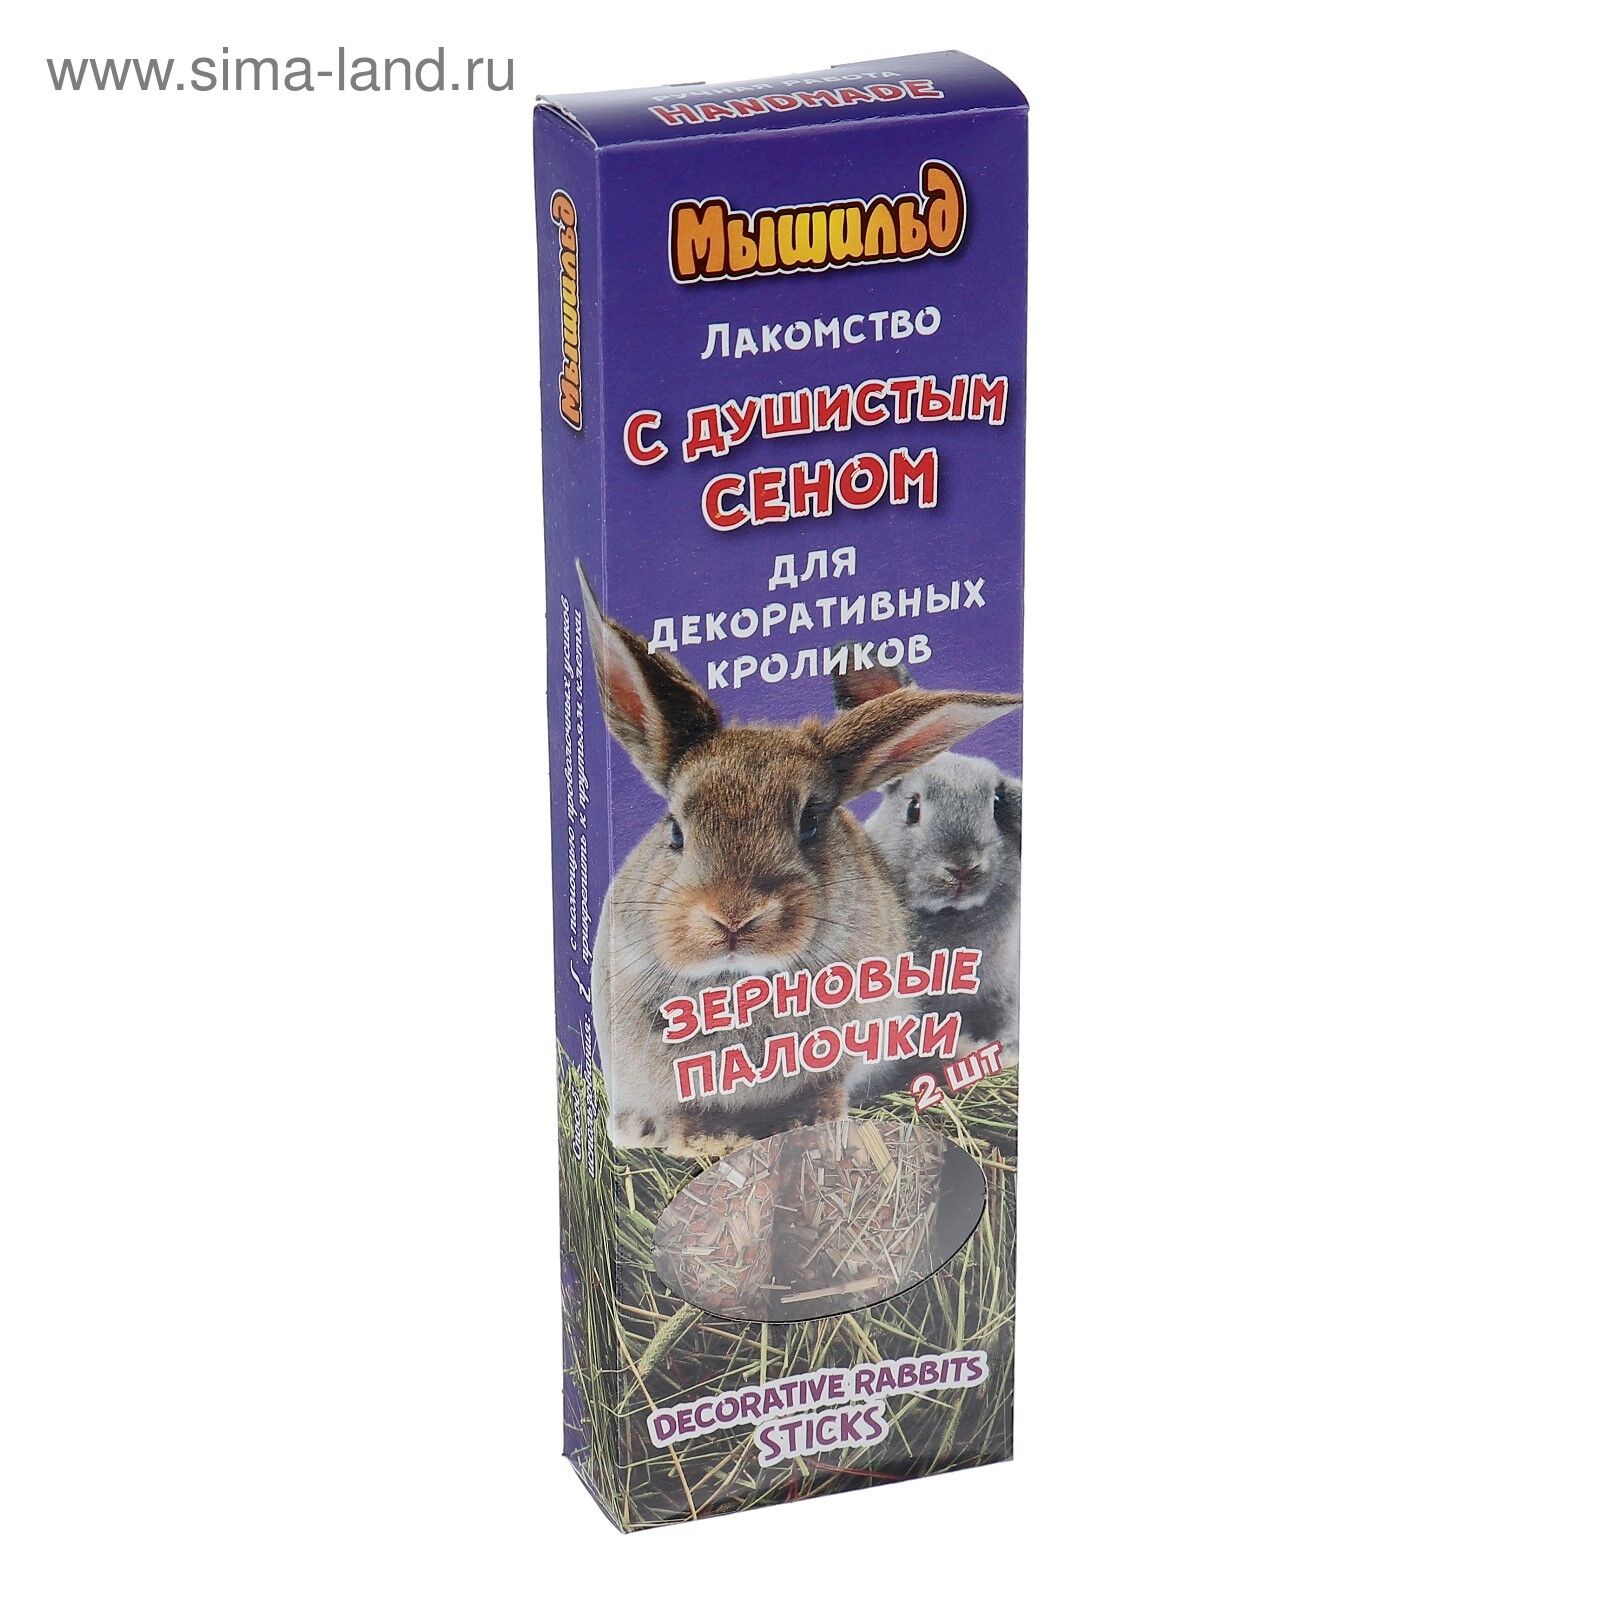 Зерновые палочки д/декоративных кролик с душистым сеном коробка 2шт 120гр